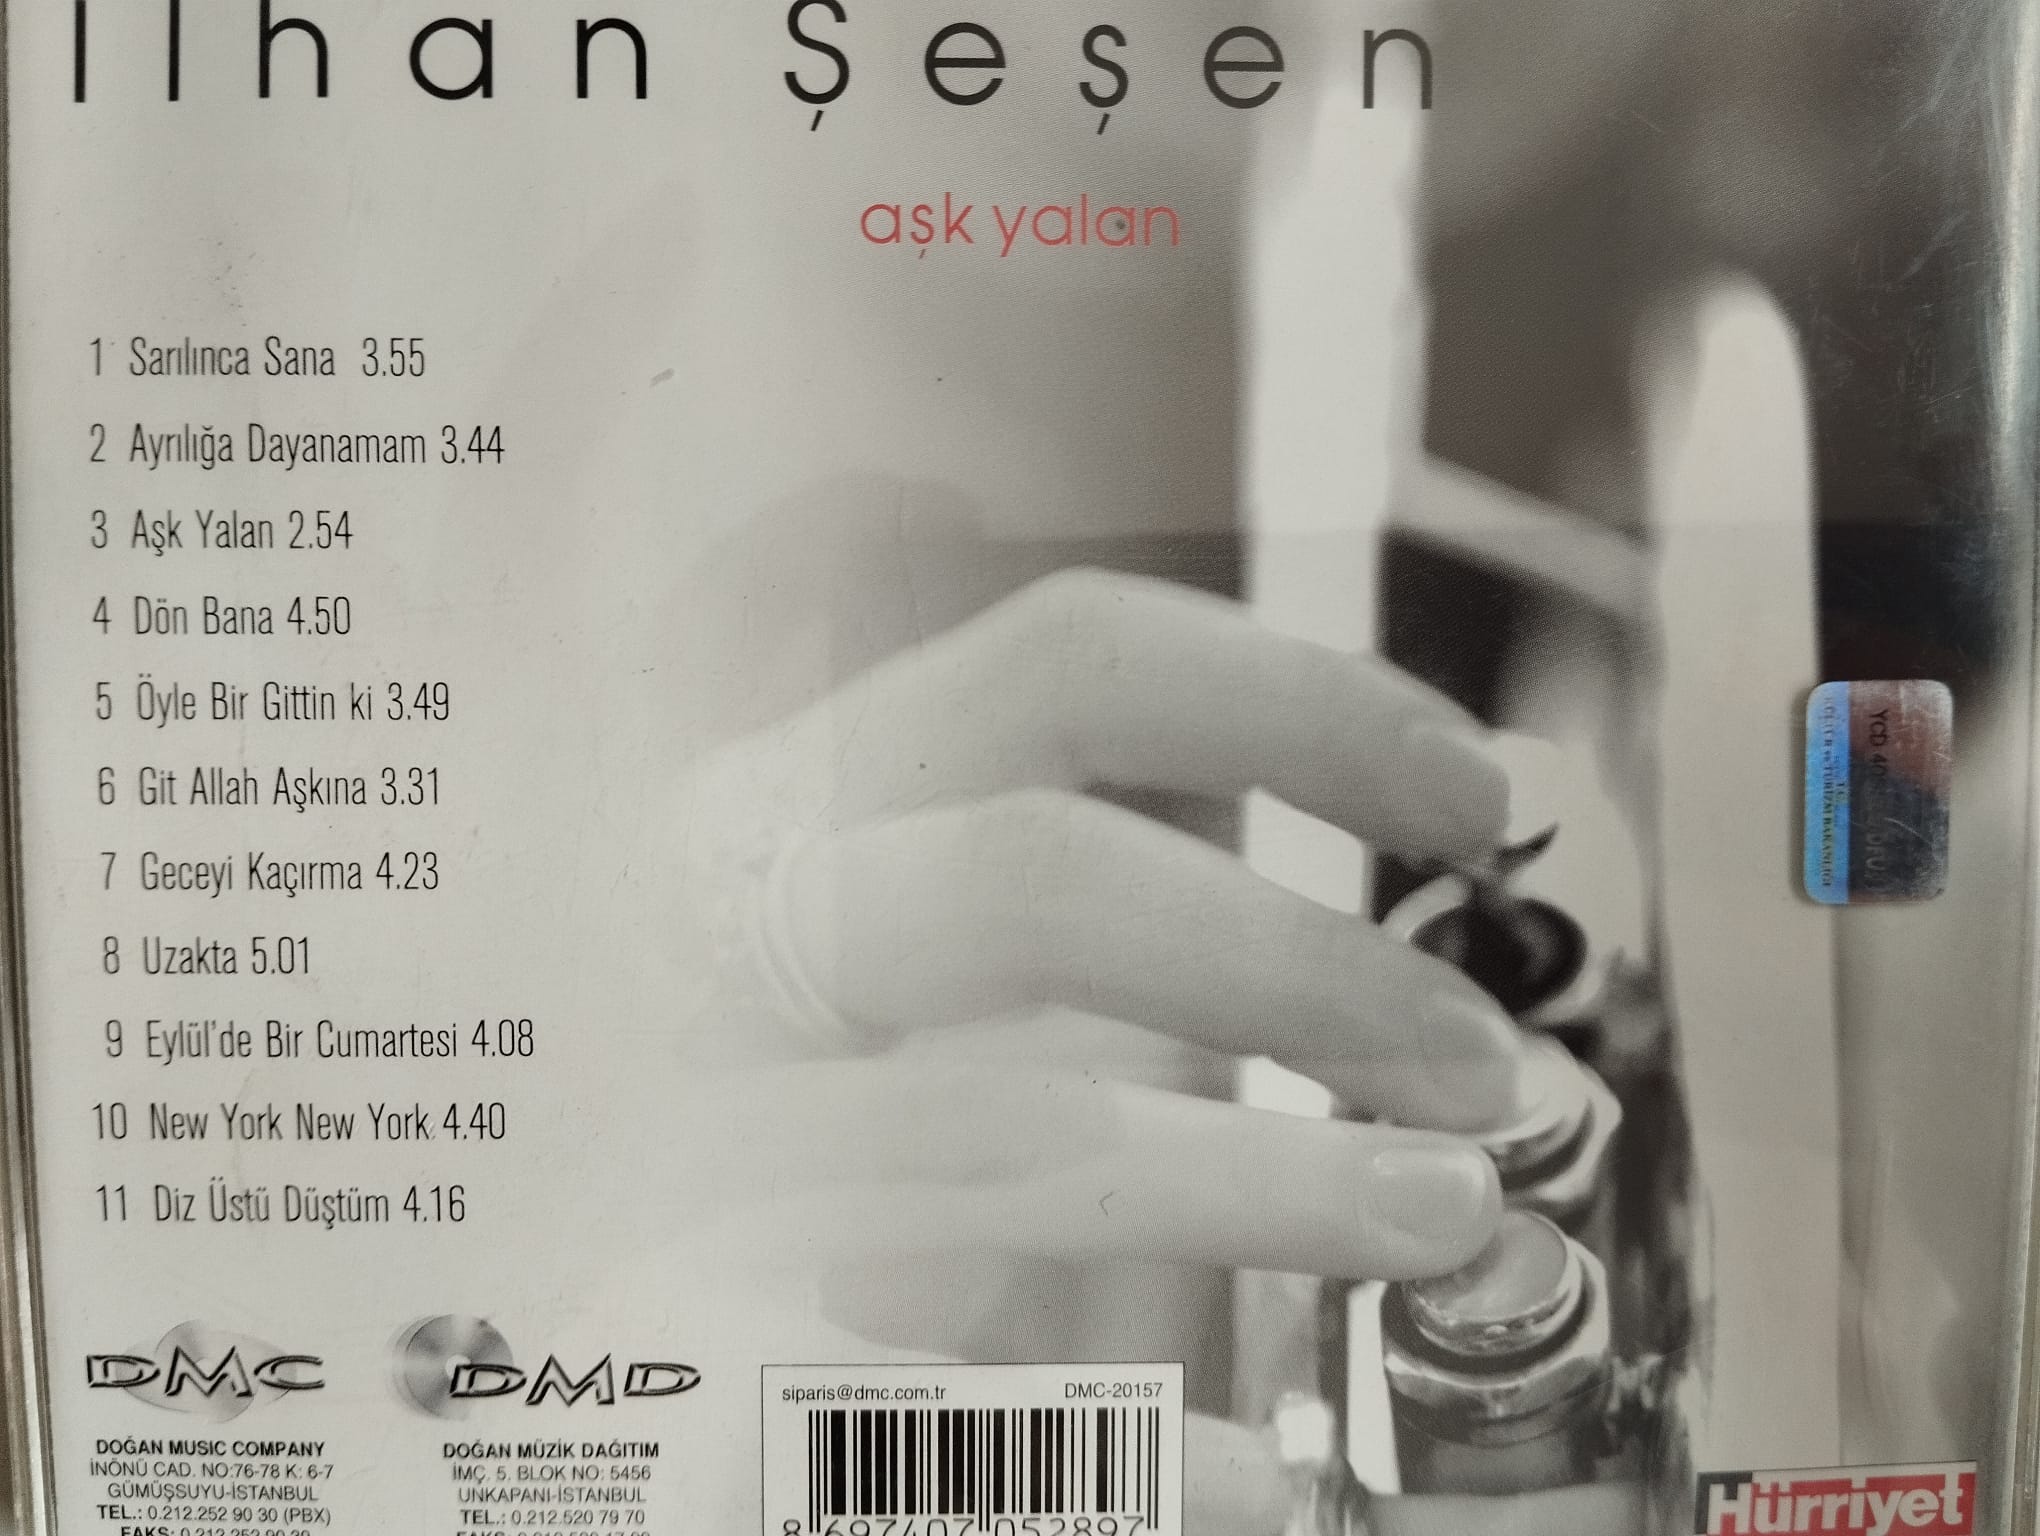 İlhan Şeşen – Aşk Yalan - 2005 Türkiye Basım 2. El  CD Albüm